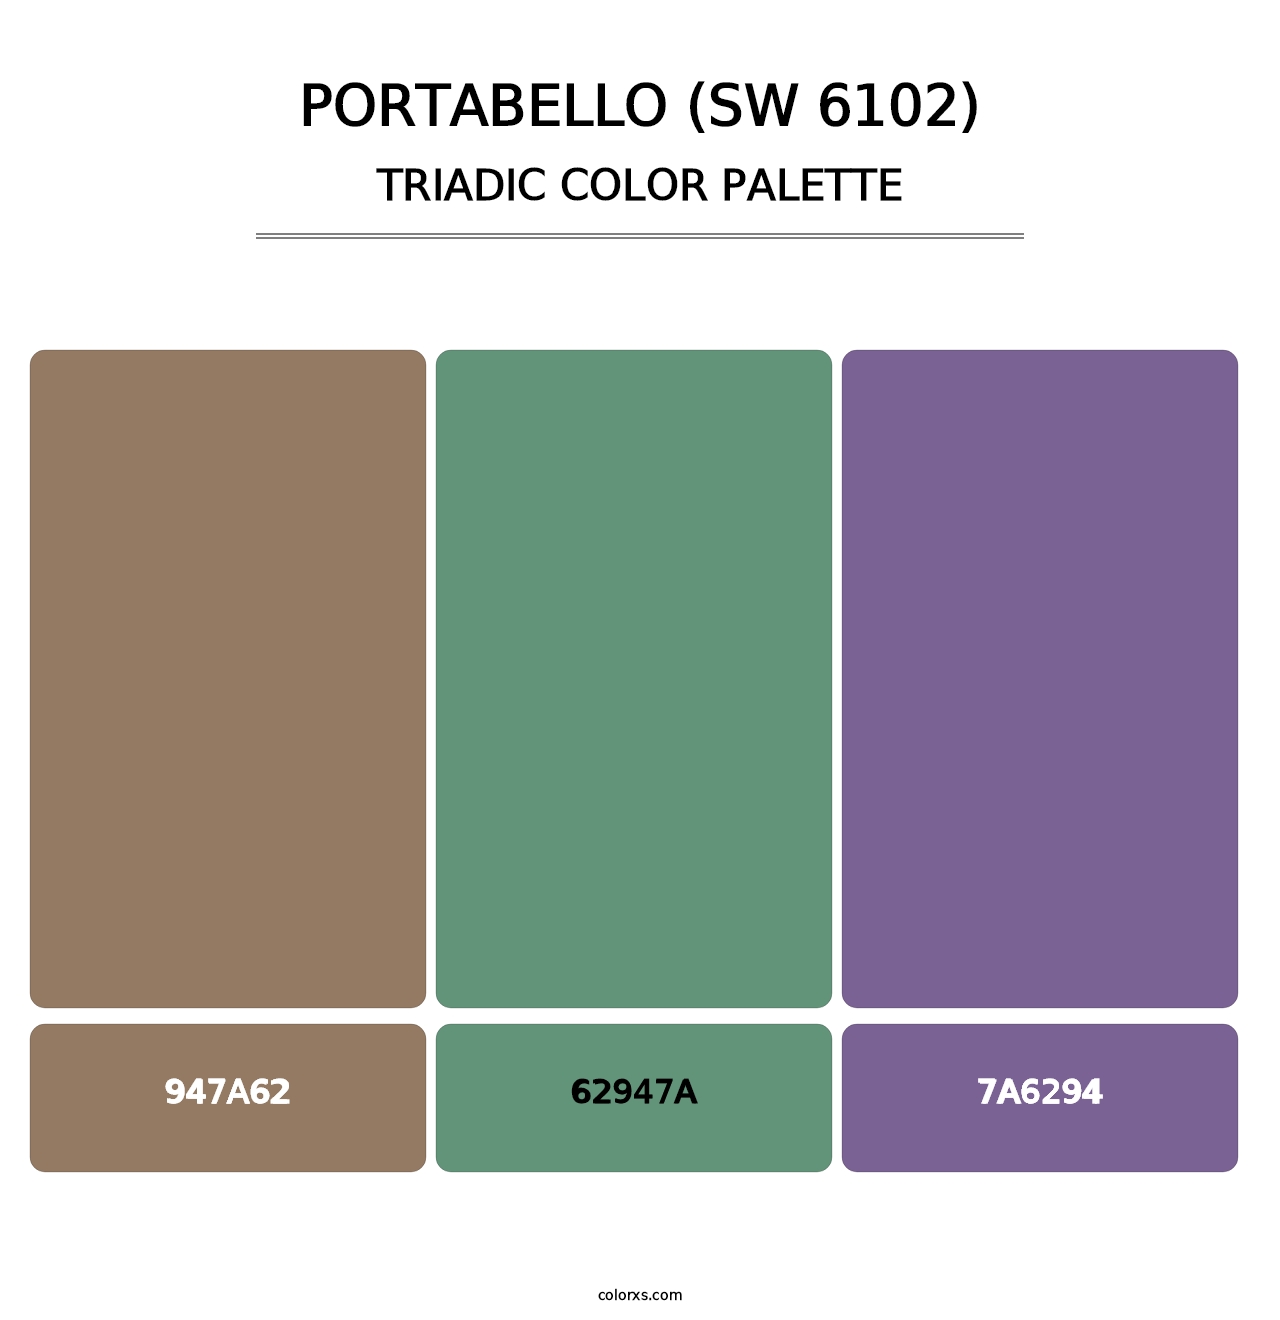 Portabello (SW 6102) - Triadic Color Palette